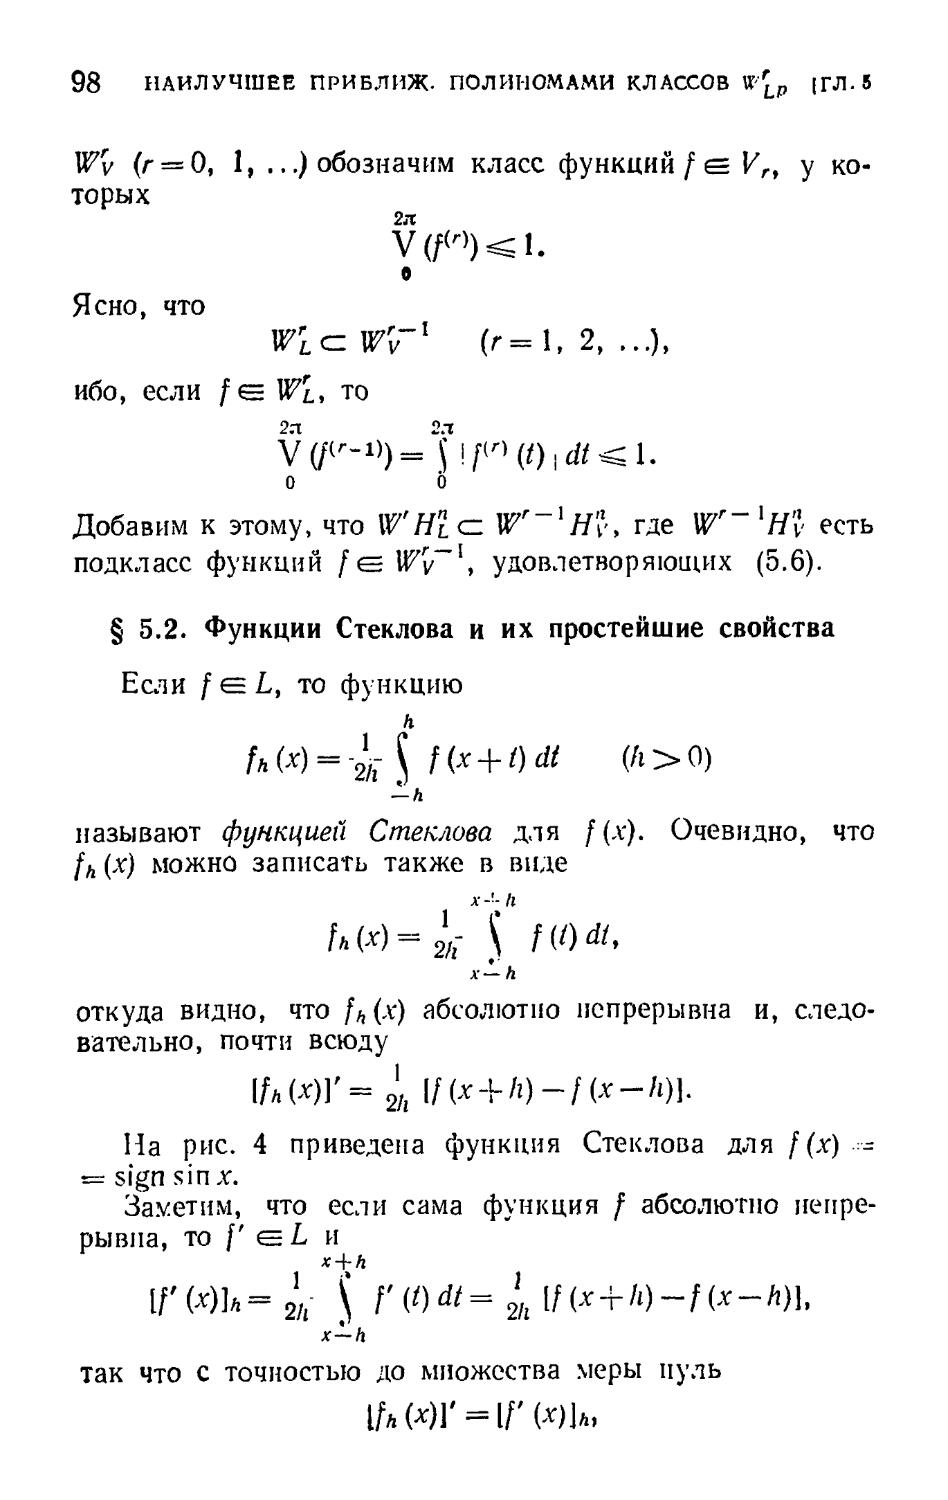 § 5.2. Функции Стеклова и их простейшие свойства